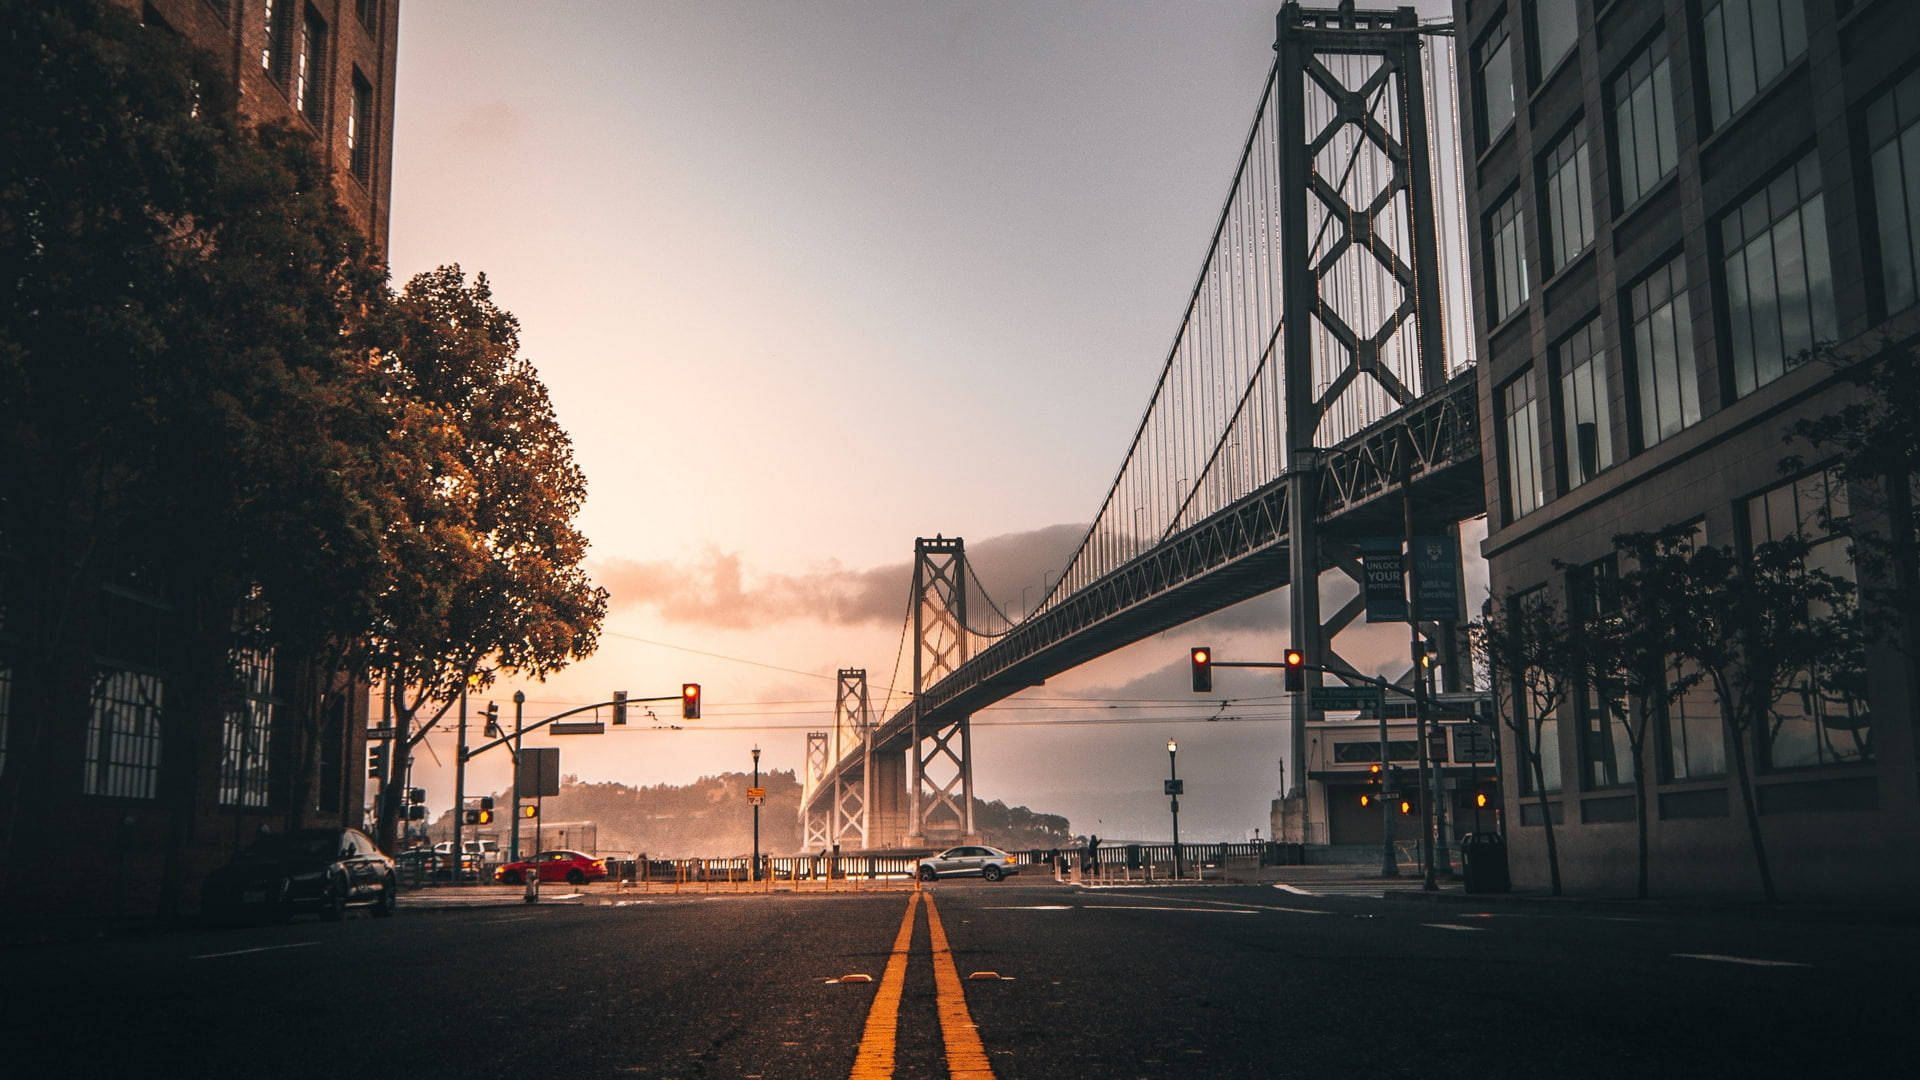 OaklandBay Bridge Kalifornien.